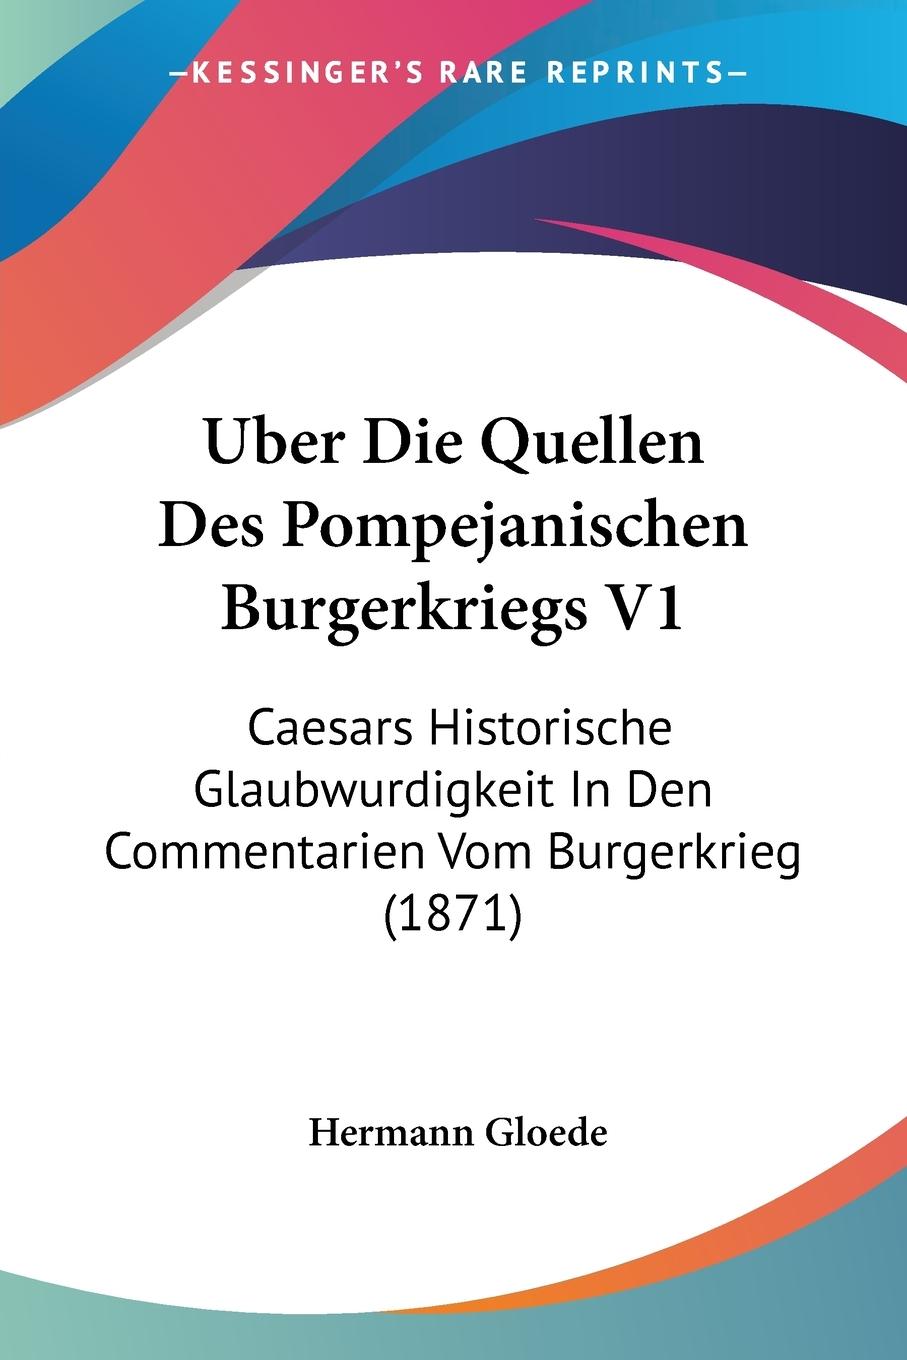 Uber Die Quellen Des Pompejanischen Burgerkriegs V1 - Gloede, Hermann